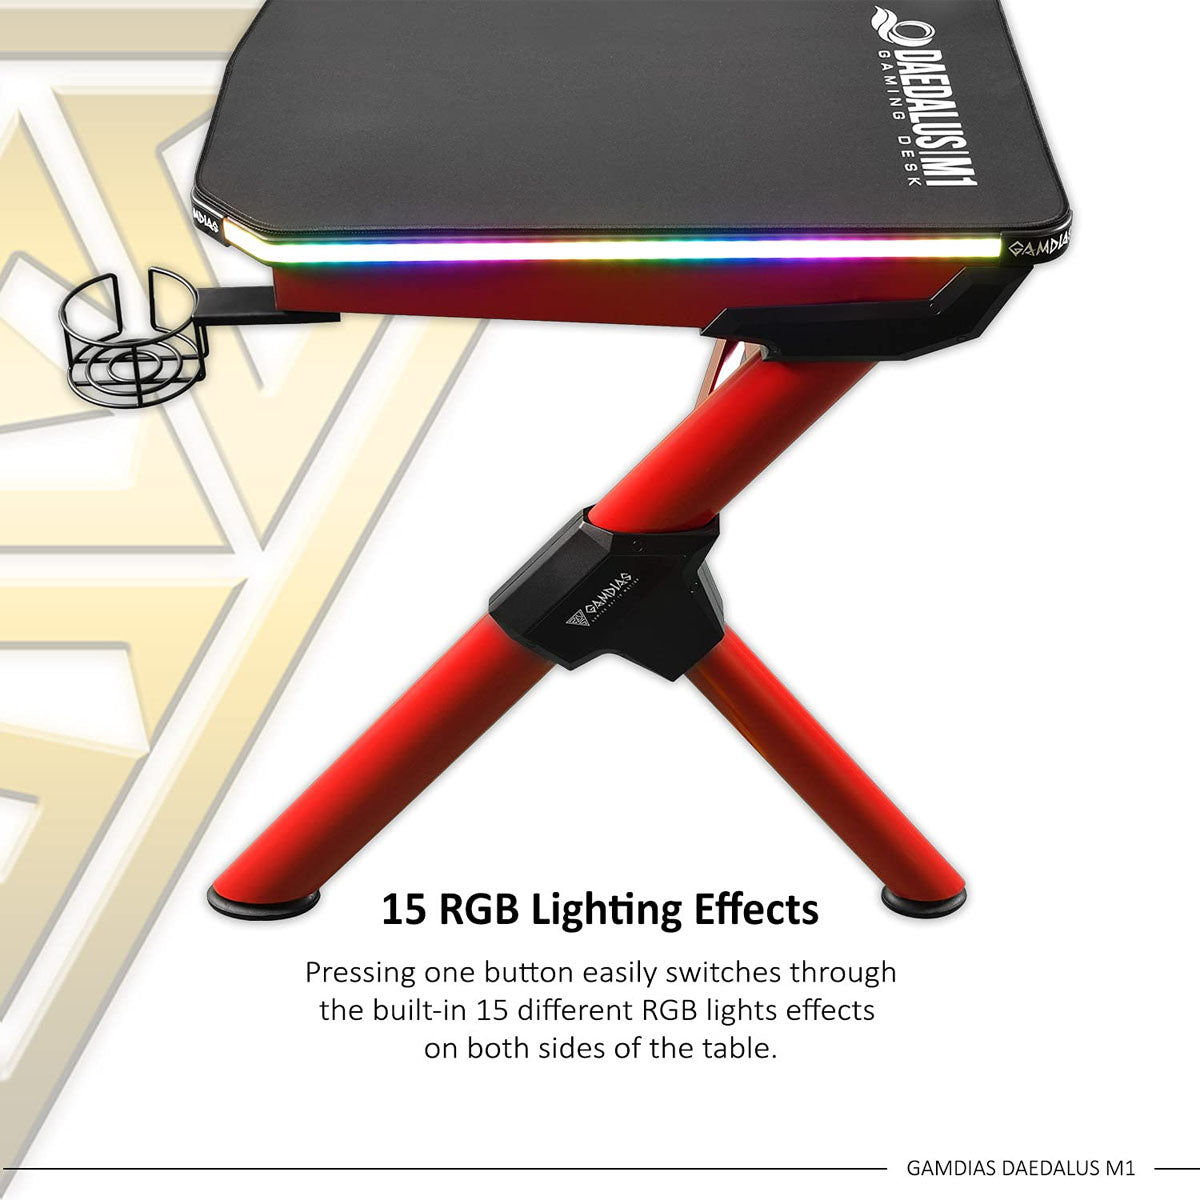 Gamdias Daedalus M1 RGB गेमिंग डेस्क बिल्ट-इन RGB लाइट्स और एडजस्टेबल फीट नॉब के साथ - काला और लाल 